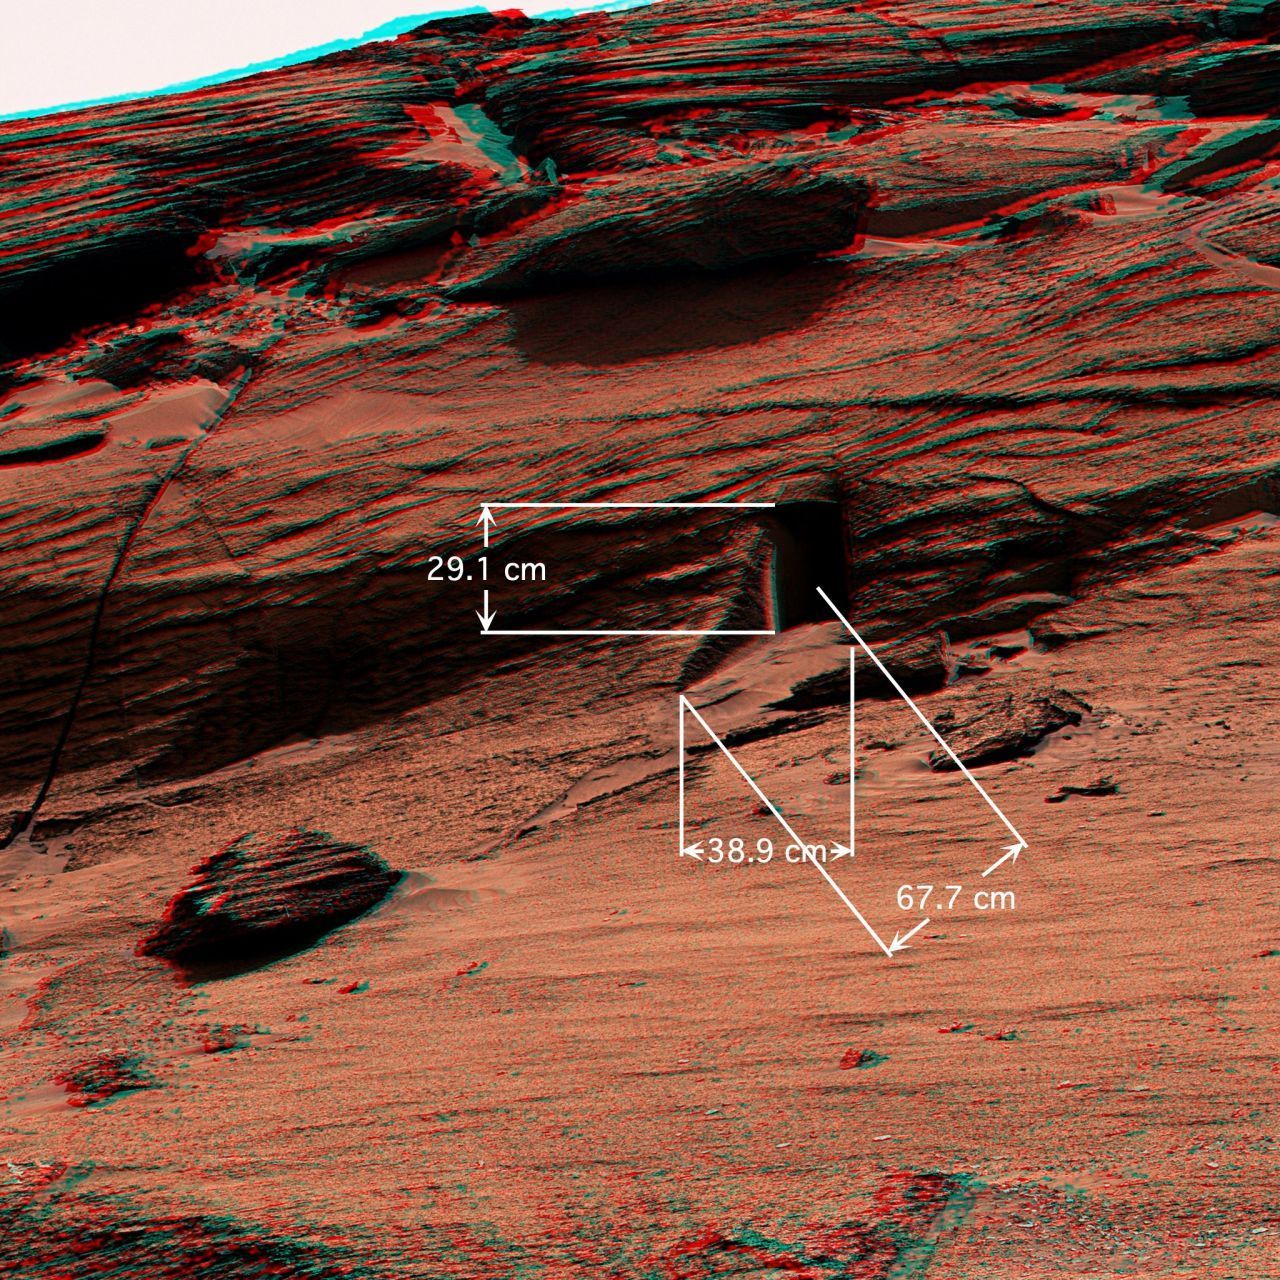 Diese "Hundetür" wurde am 7. Mai 2022 in den "East Cliffs" auf dem Mars entdeckt. Sie misst gerade einmal wenige Zentimeter. Es handelt sich um eine häufig auftretende Form im Grundgestein.